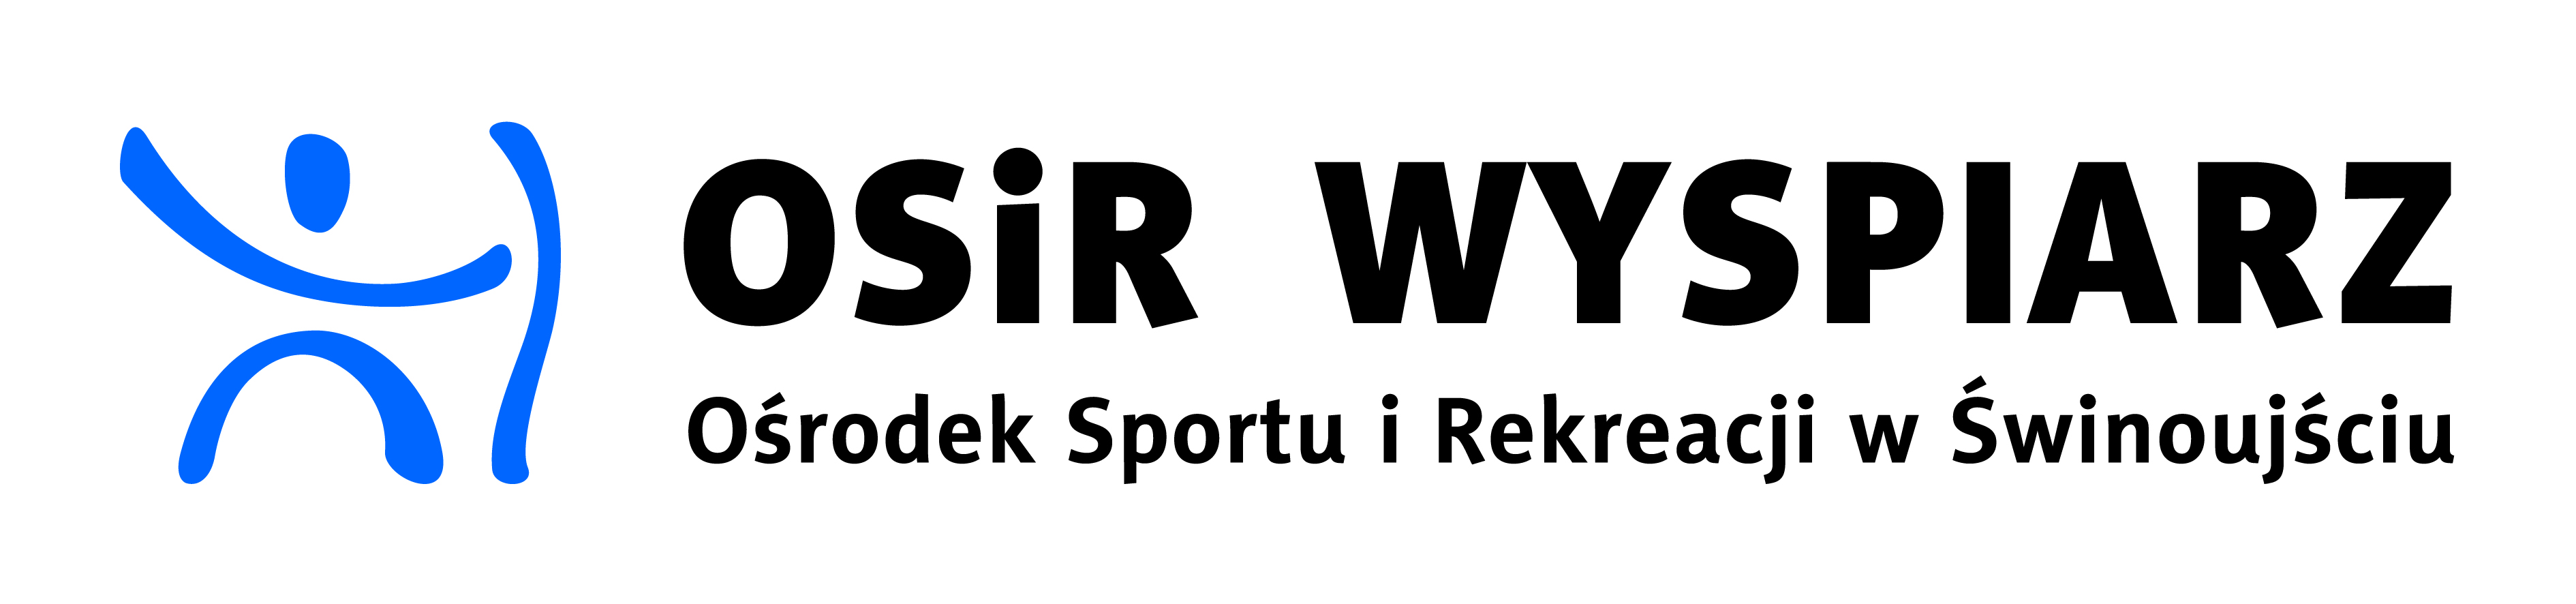 Logo Ośrodka Sportu i Rekreacji Wyspiarz w Świnoujściu